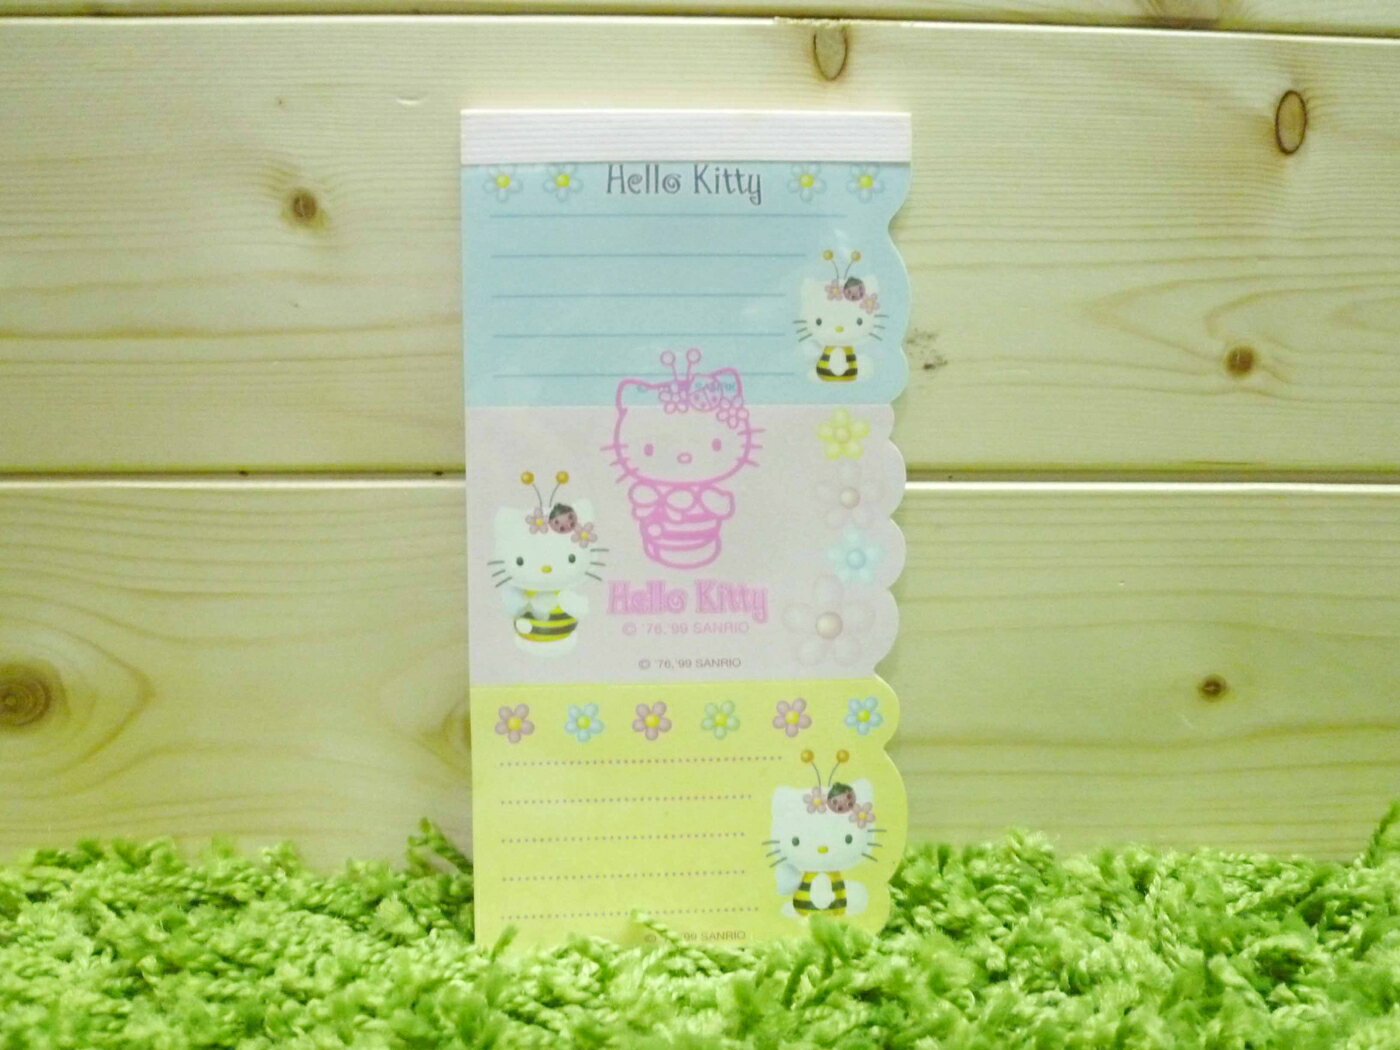 【震撼精品百貨】Hello Kitty 凱蒂貓 造型便條紙-三折便條-蜜蜂圖案【共1款】 震撼日式精品百貨